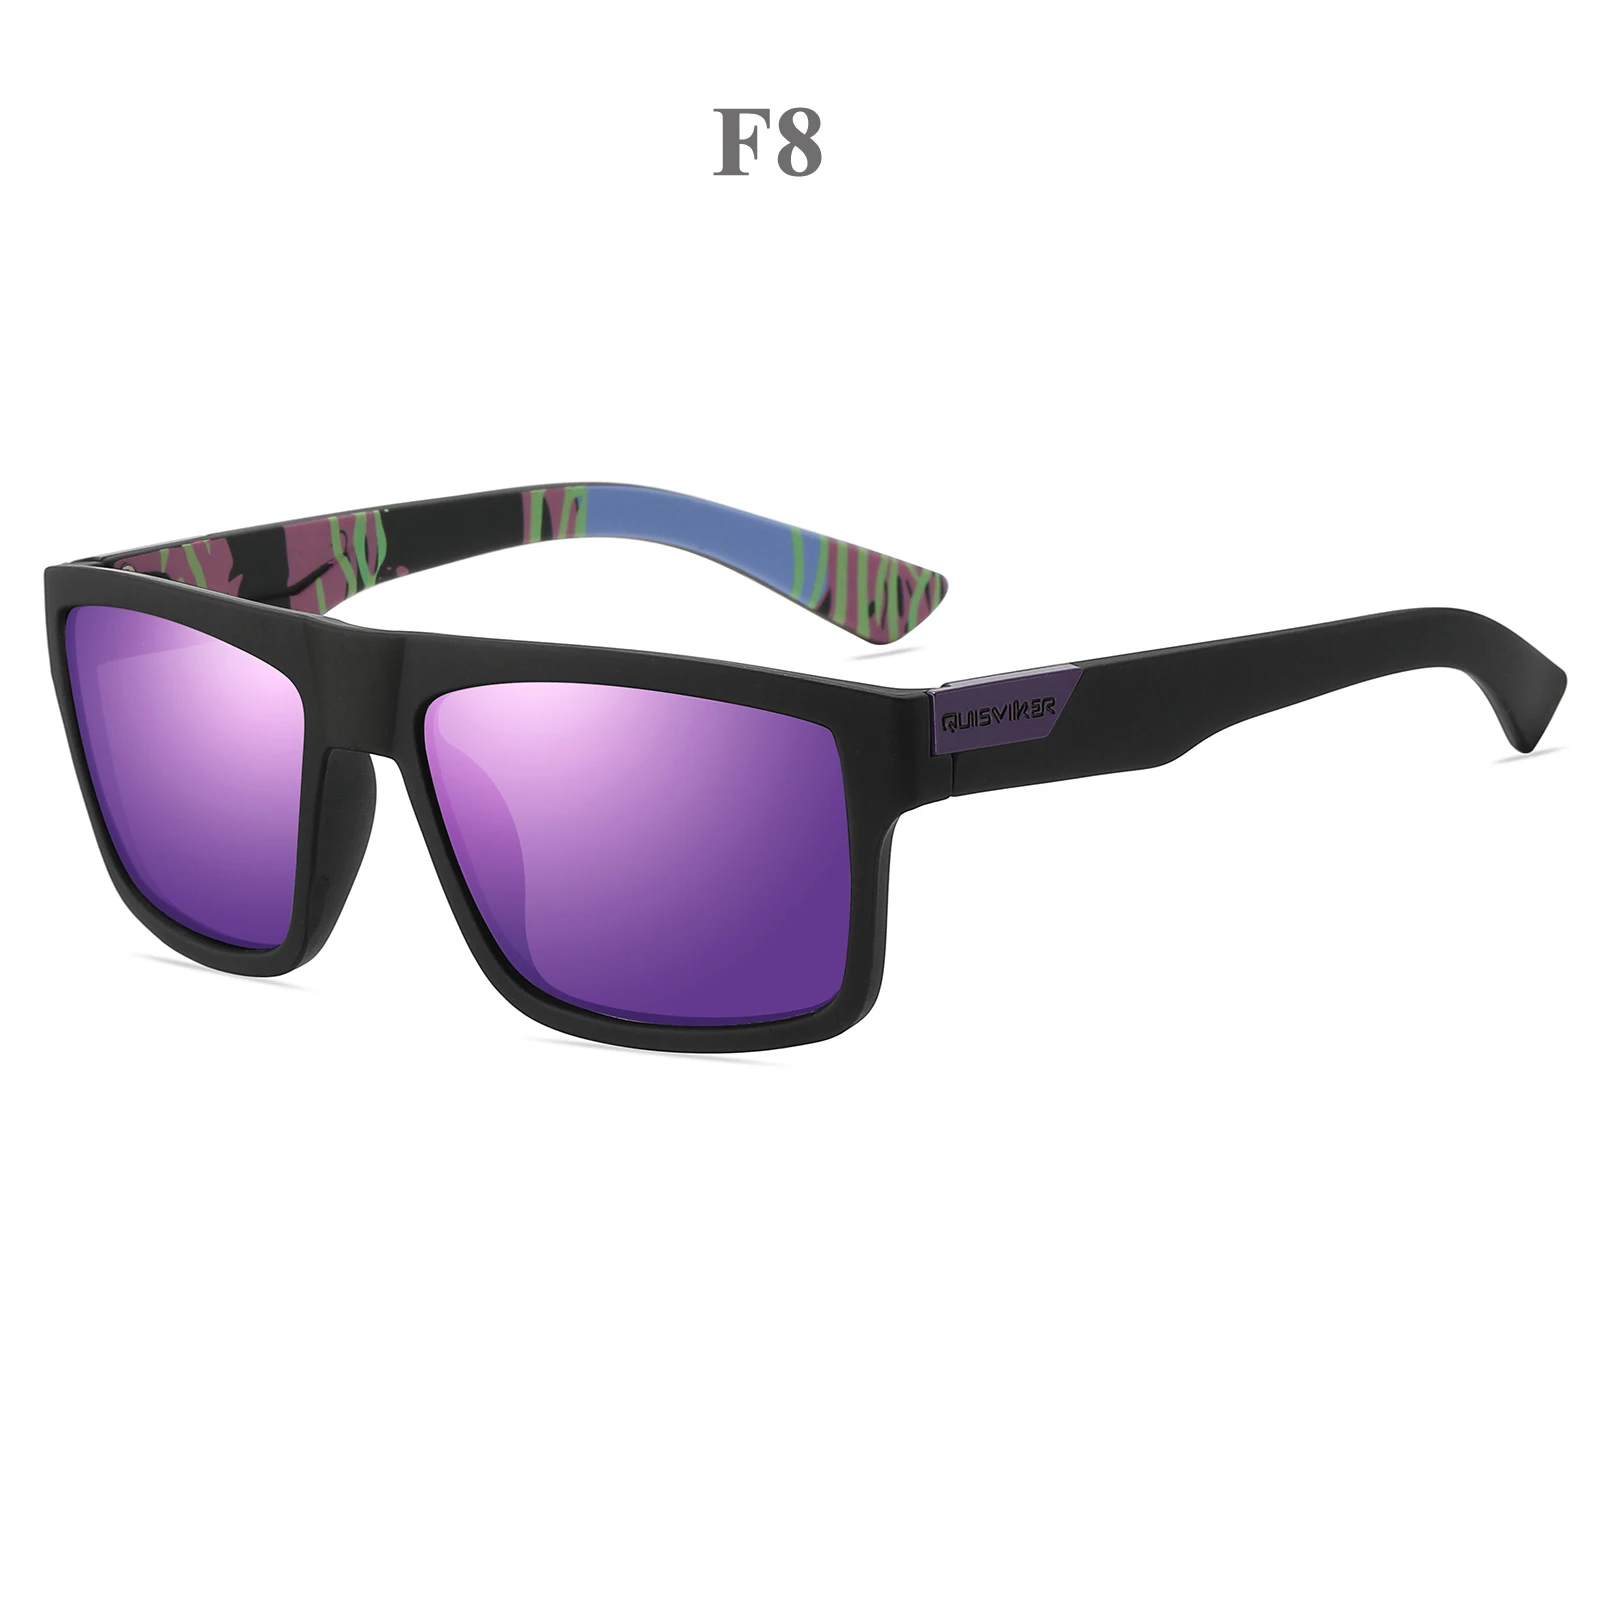 Поляризованные солнцезащитные очки для мужчин и женщин UV400, солнцезащитные очки, очки для рыбалки, спортивные очки для активного отдыха